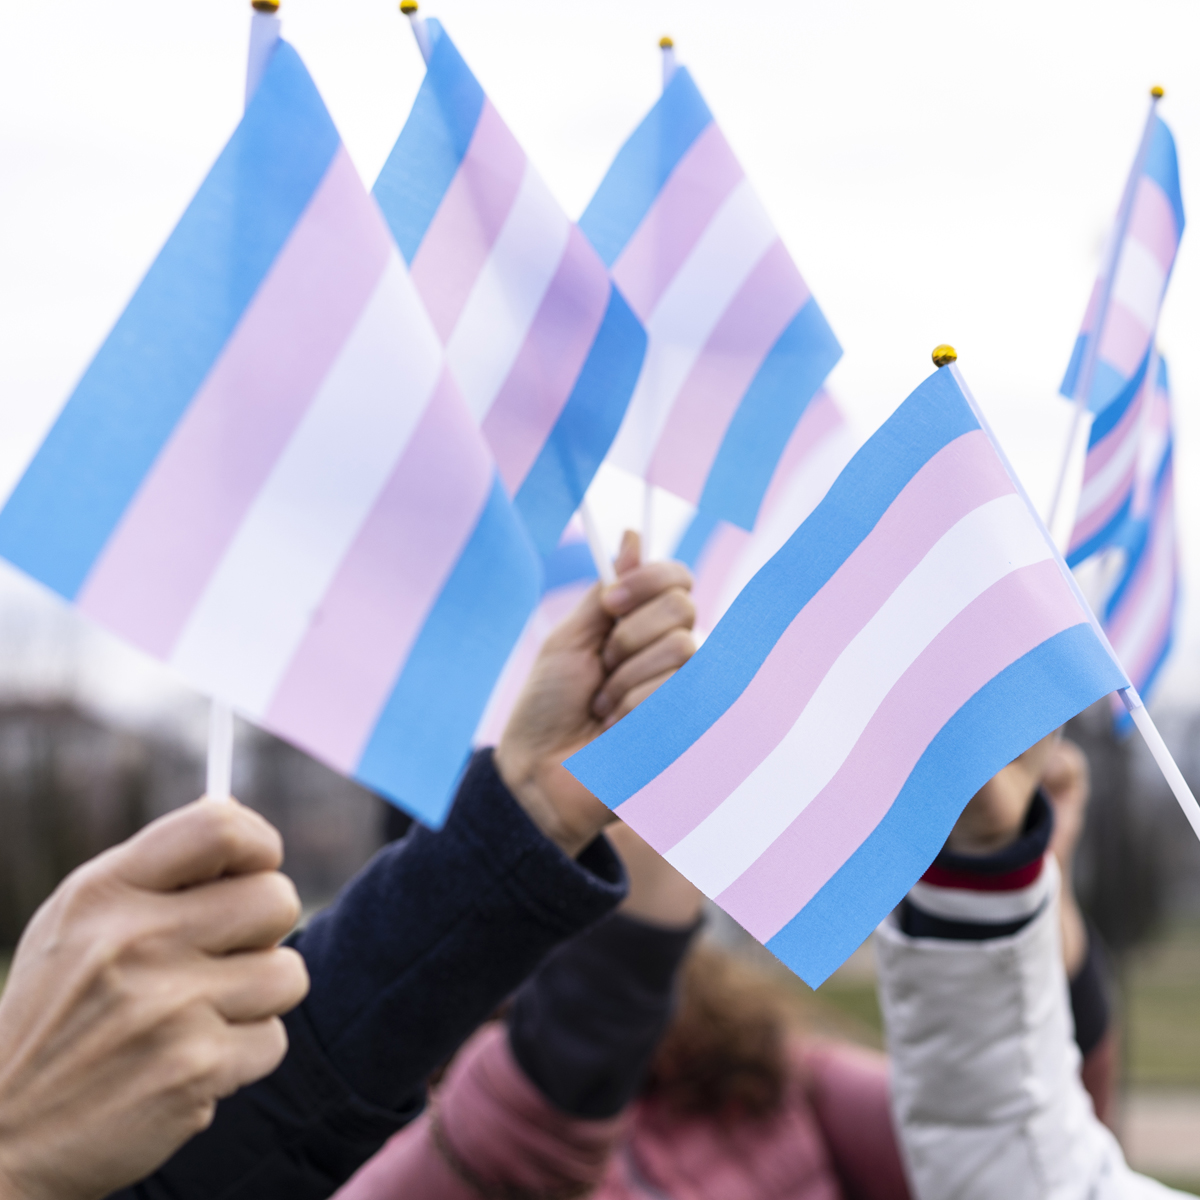 La visibilité trans passe d’abord par la défense de leurs droits fondamentaux